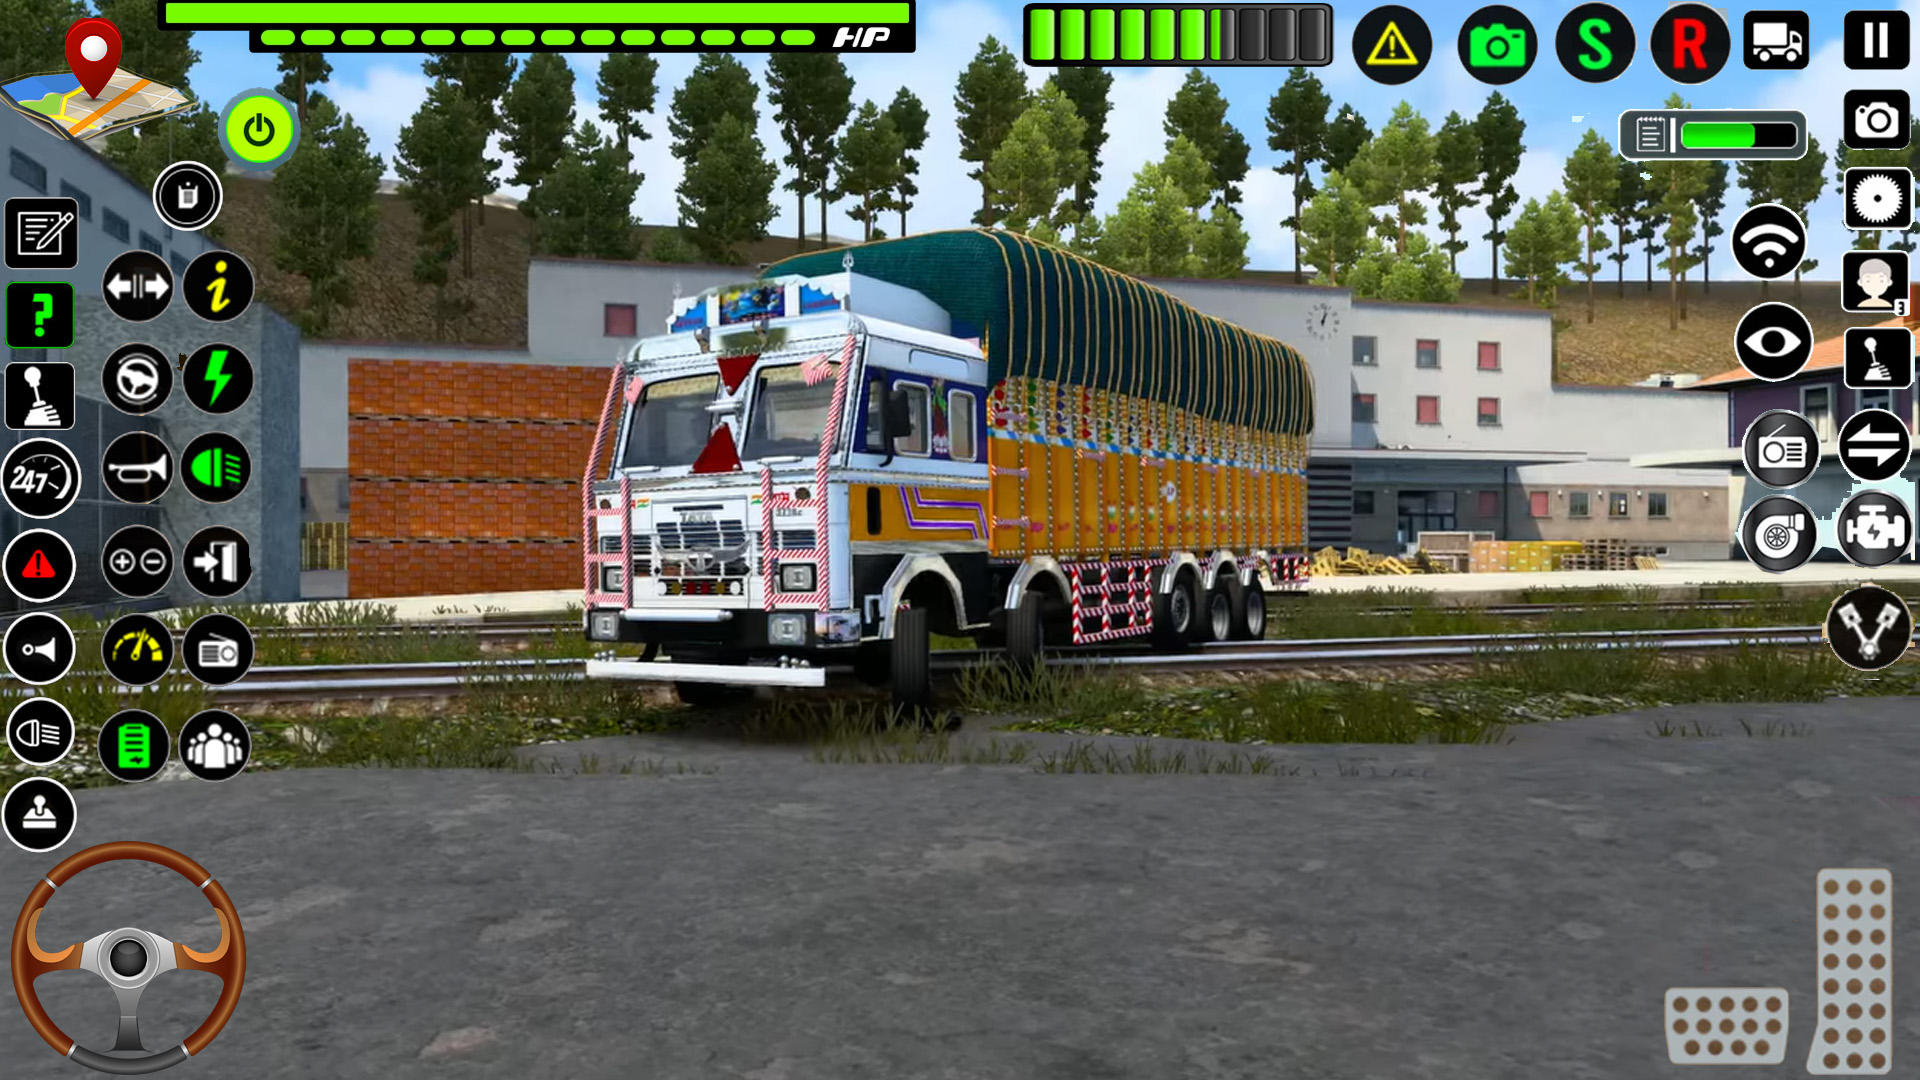 Screenshot 1 of Trò chơi xe tải hạng nặng của Ấn Độ 0.2